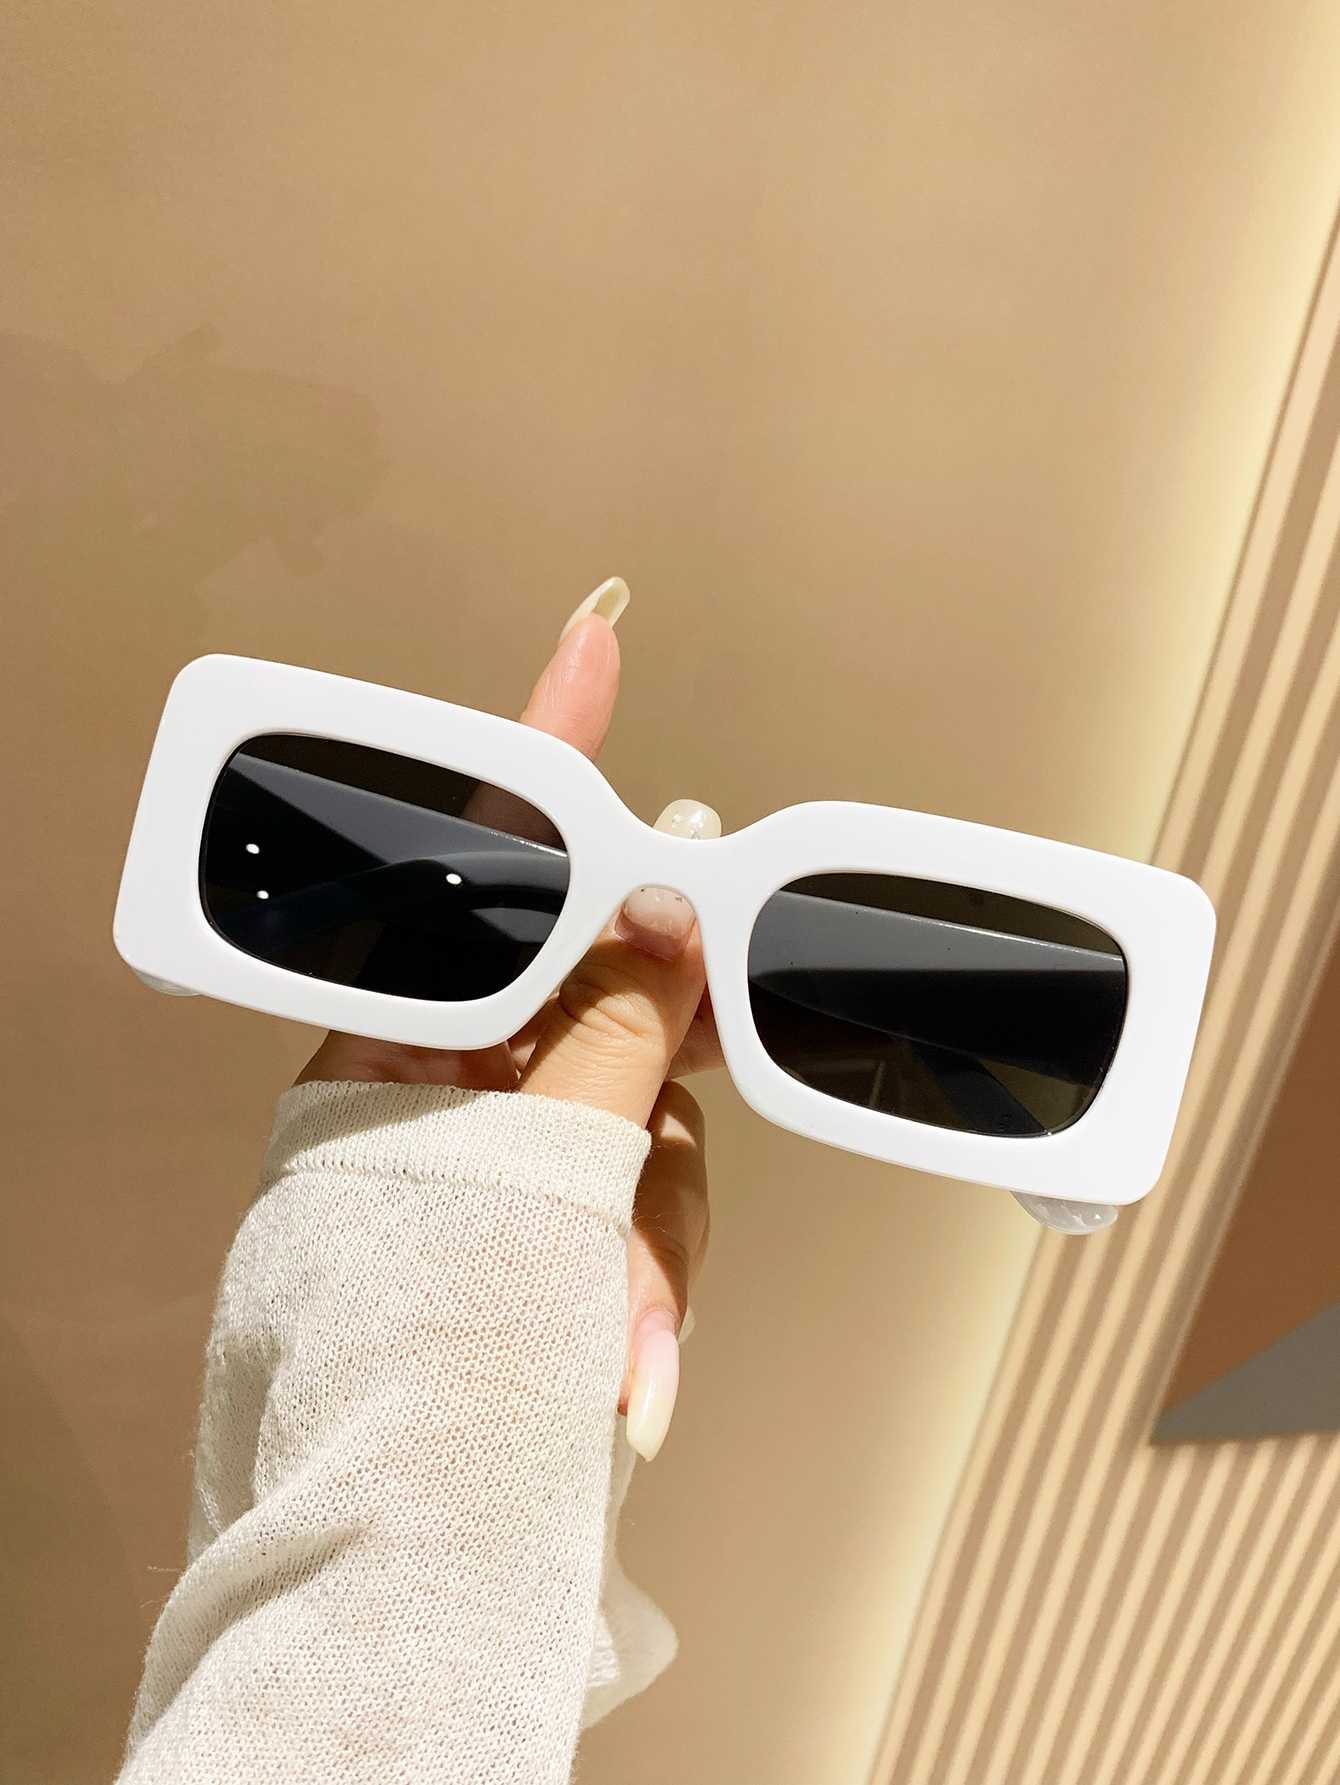 цена 1 шт. Маленькие черные модные солнцезащитные очки квадратной формы в пластиковой рамке для защиты от солнца на пляже